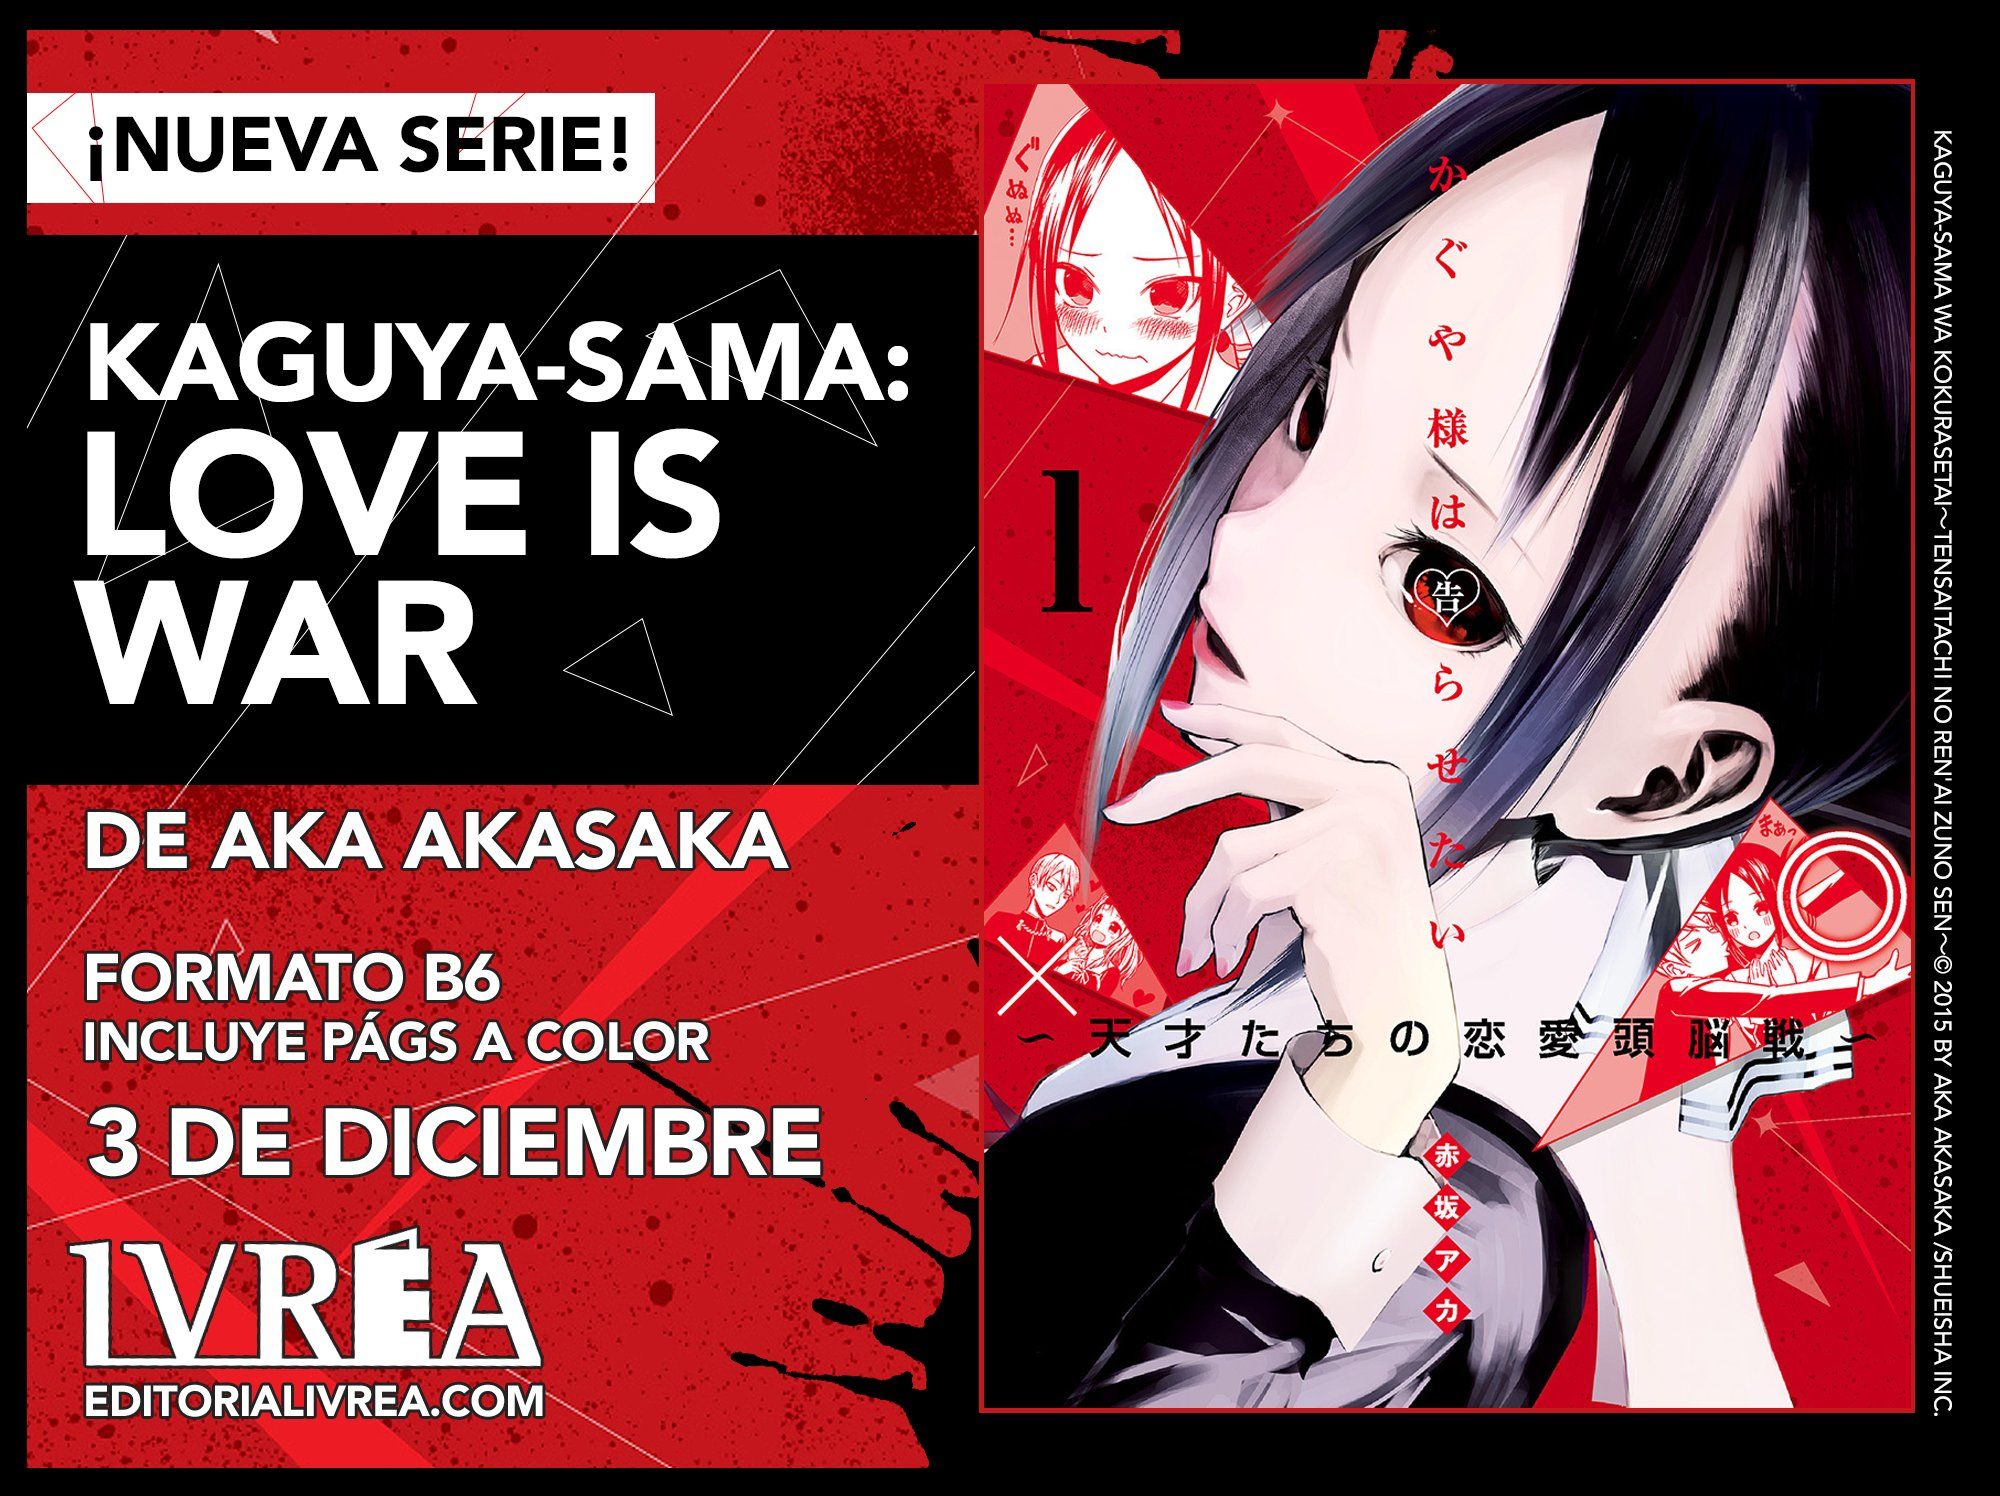 Kaguya-sama: Love is War concreta el estreno de su temporada 3 con